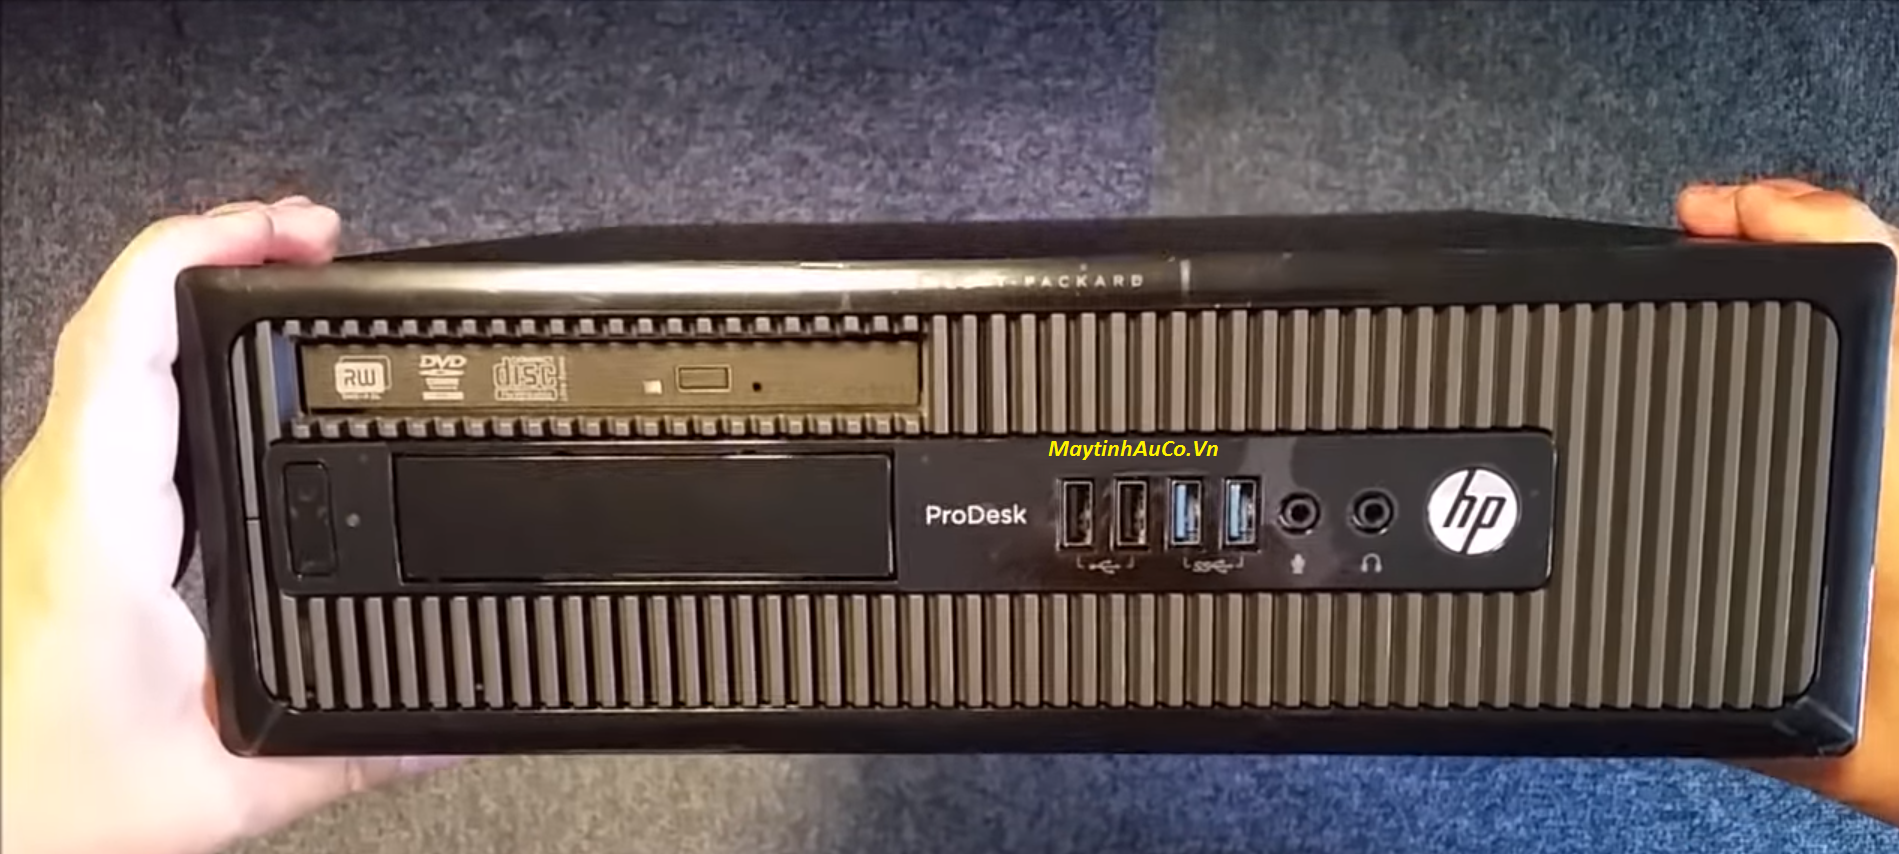 Máy tính đồng bộ HP ProDesk 800 G1